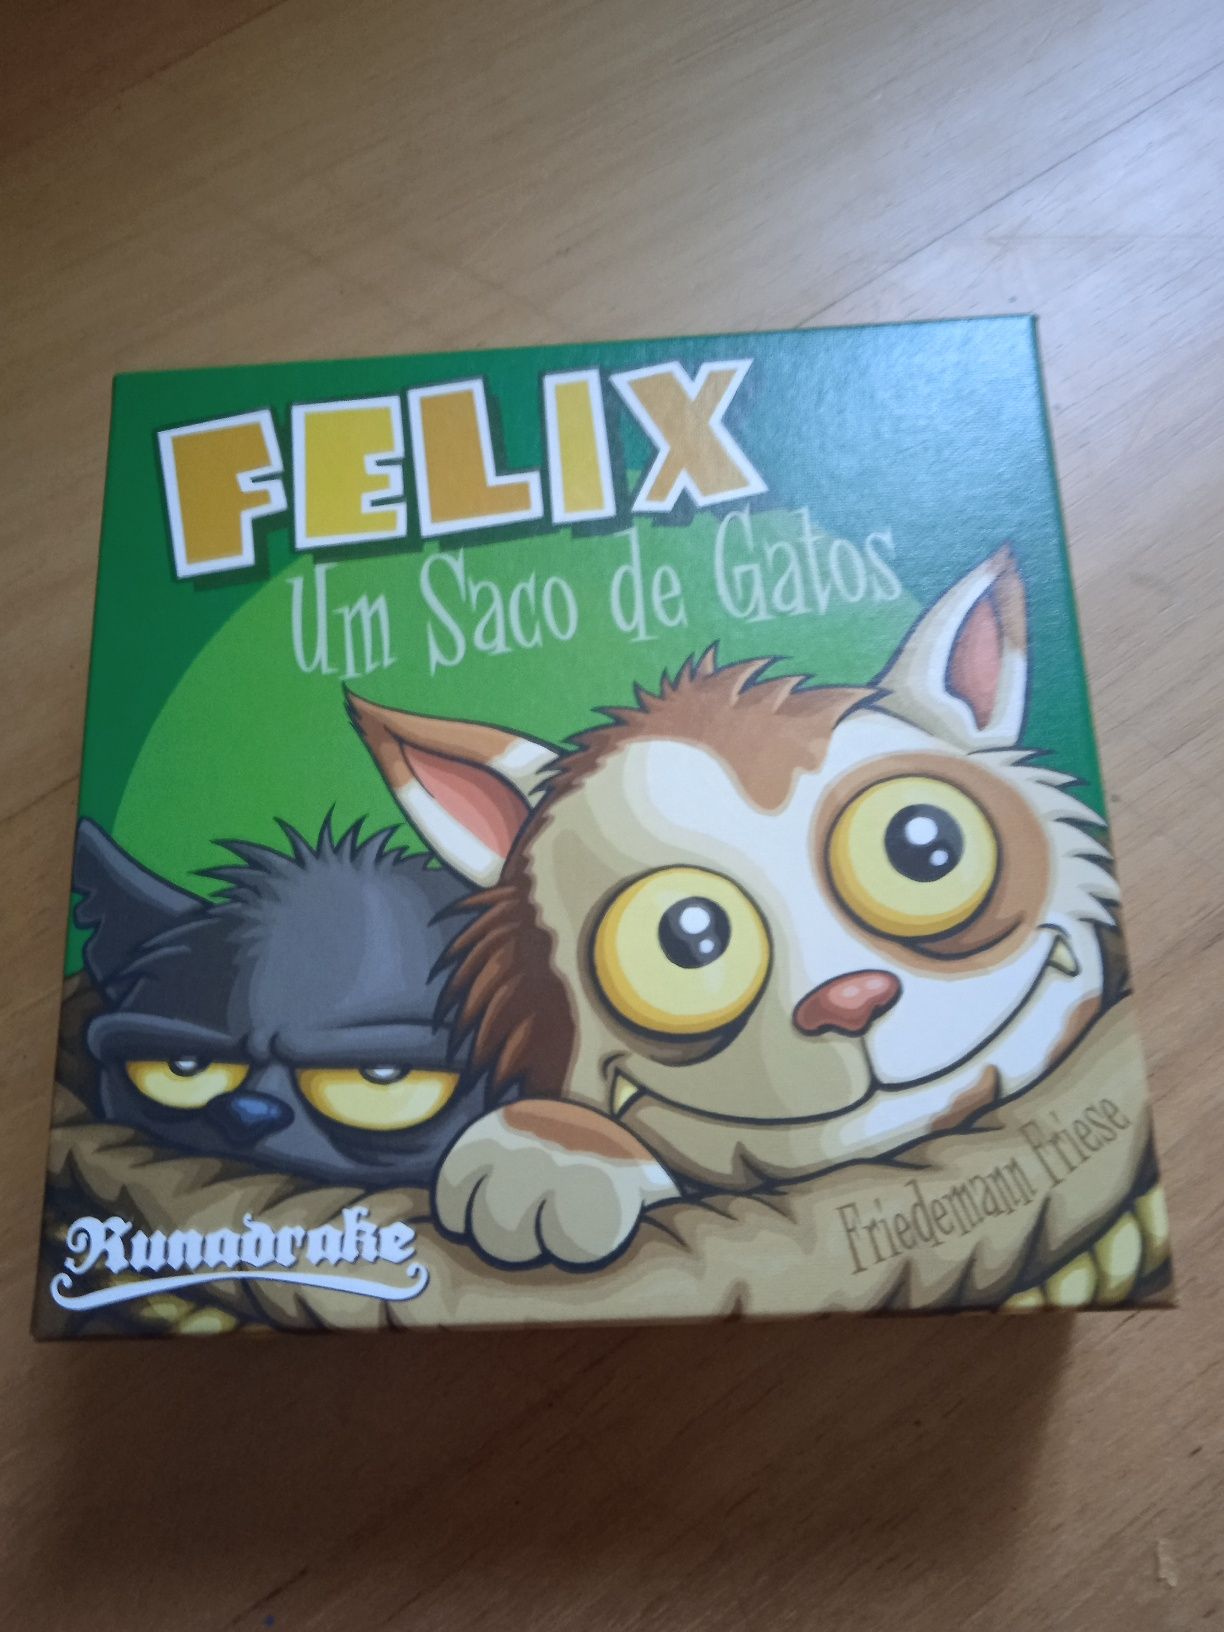 Félix um Saco de Gatos